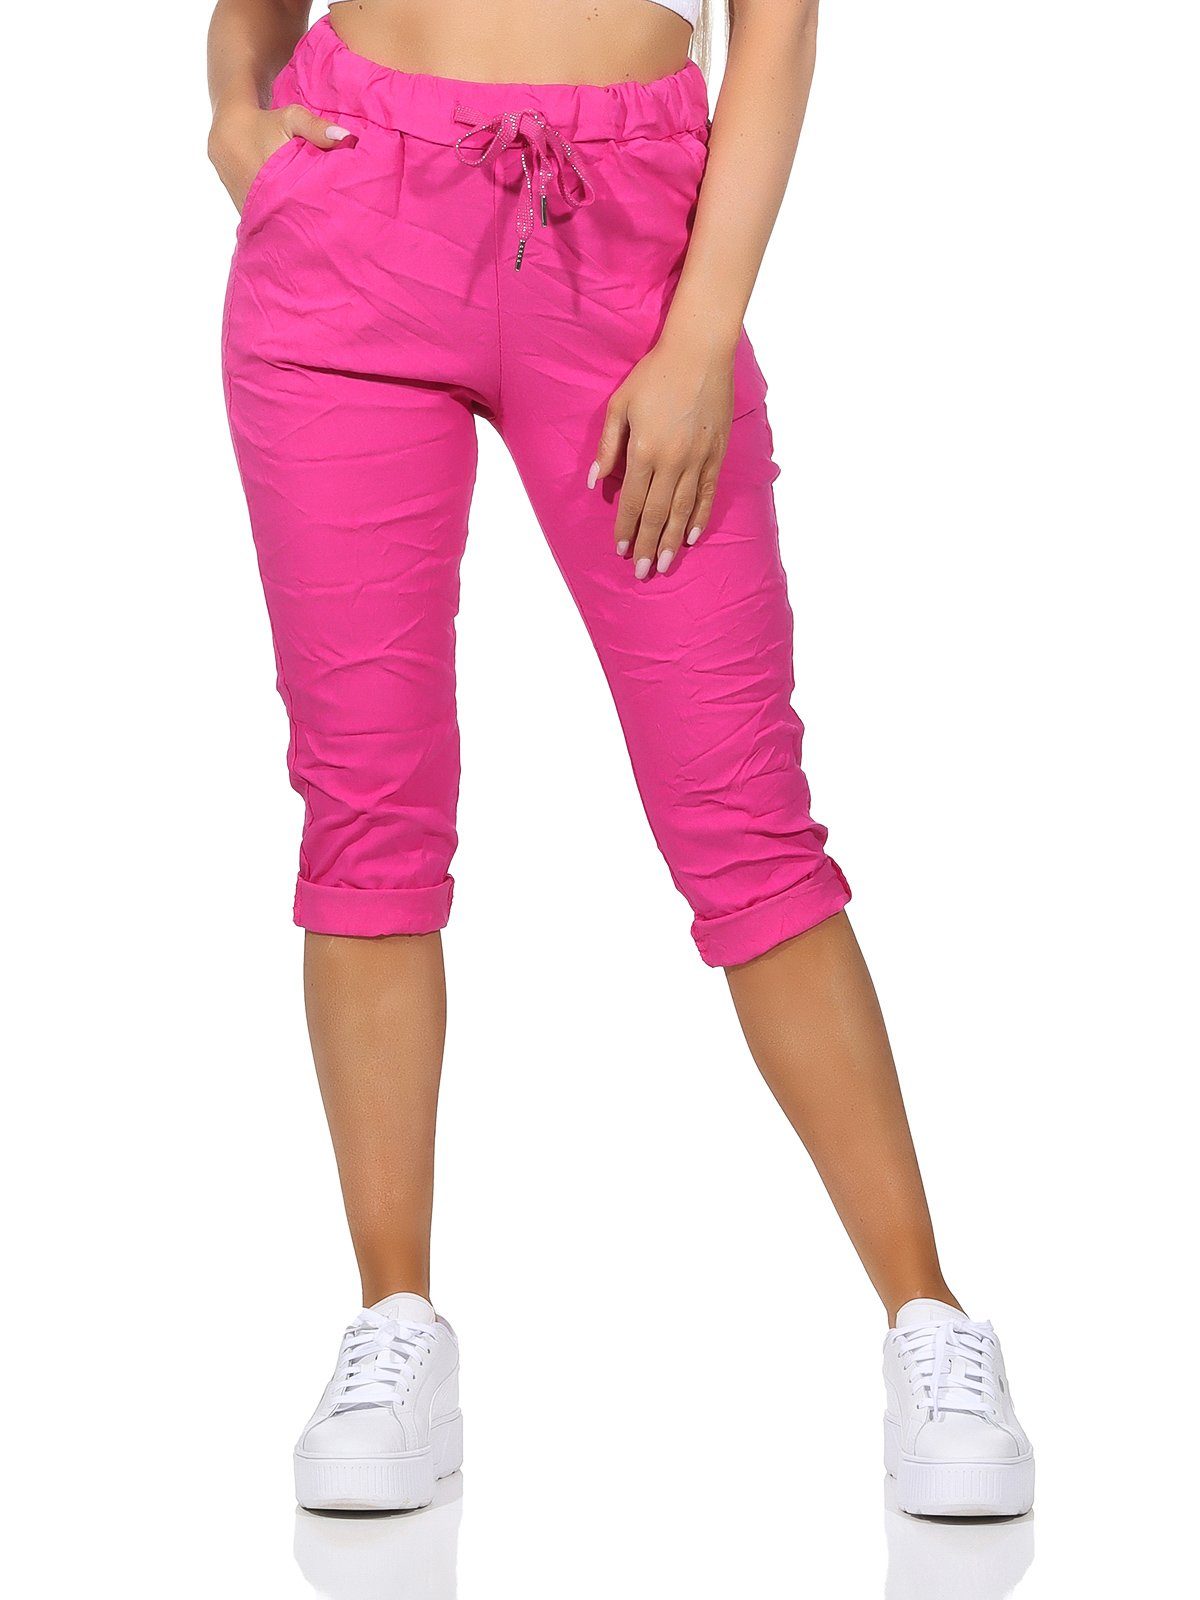 Aurela Damenmode 7/8-Hose Damen Sommerhose Capri Kurze sommerlichen und Bermuda in Farben, Kordelzug, Taschen 36-44 Jeans Pink Hose